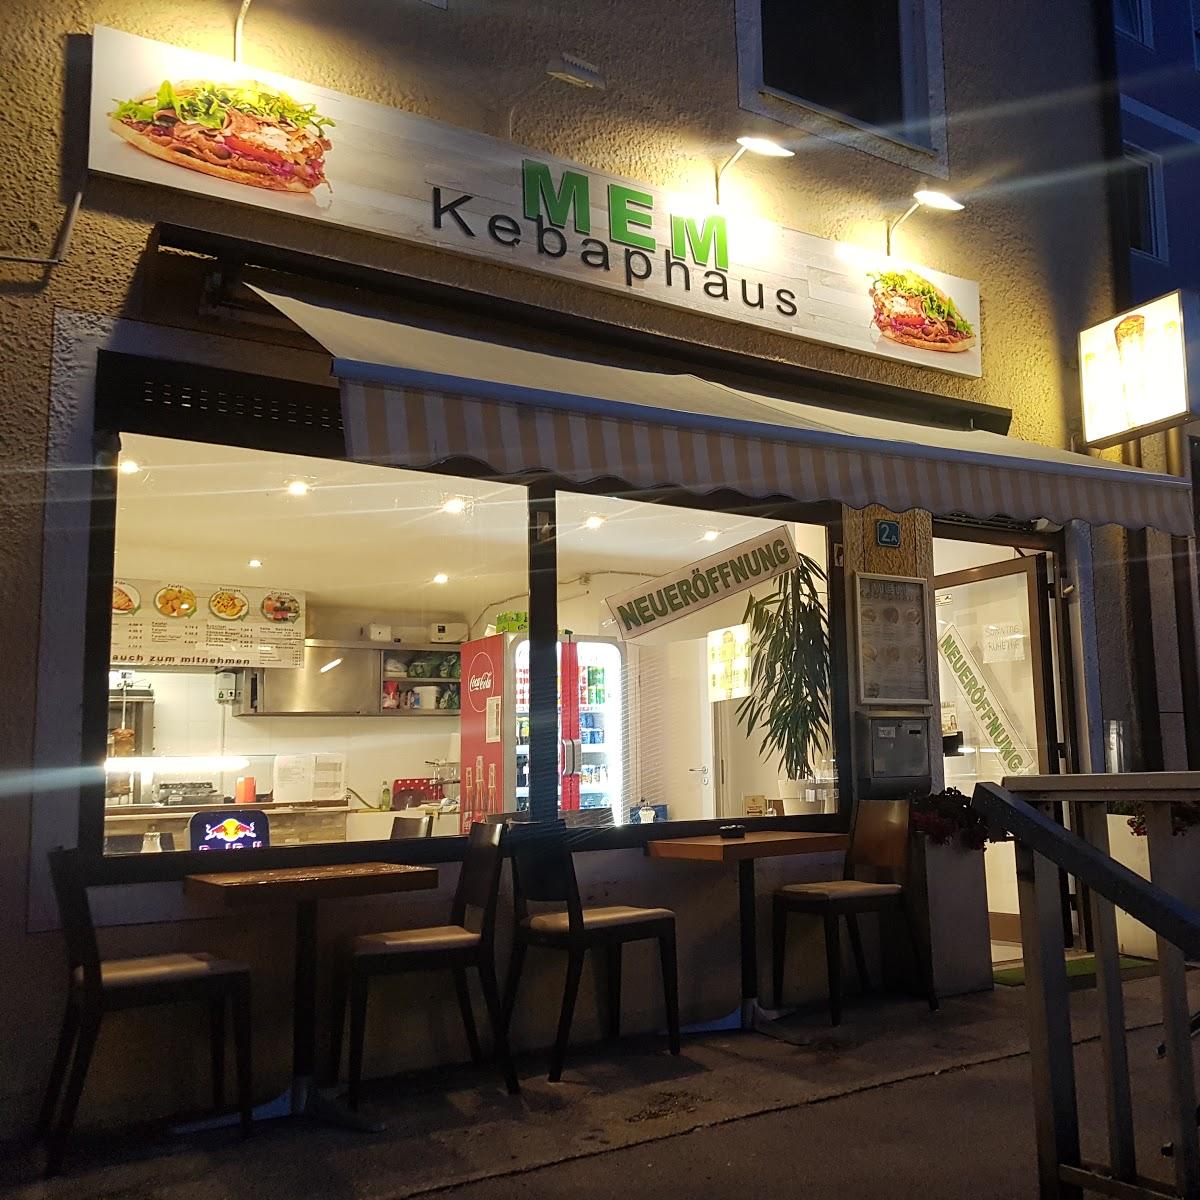 Restaurant "MEM Döner Kebap Haus" in Olching